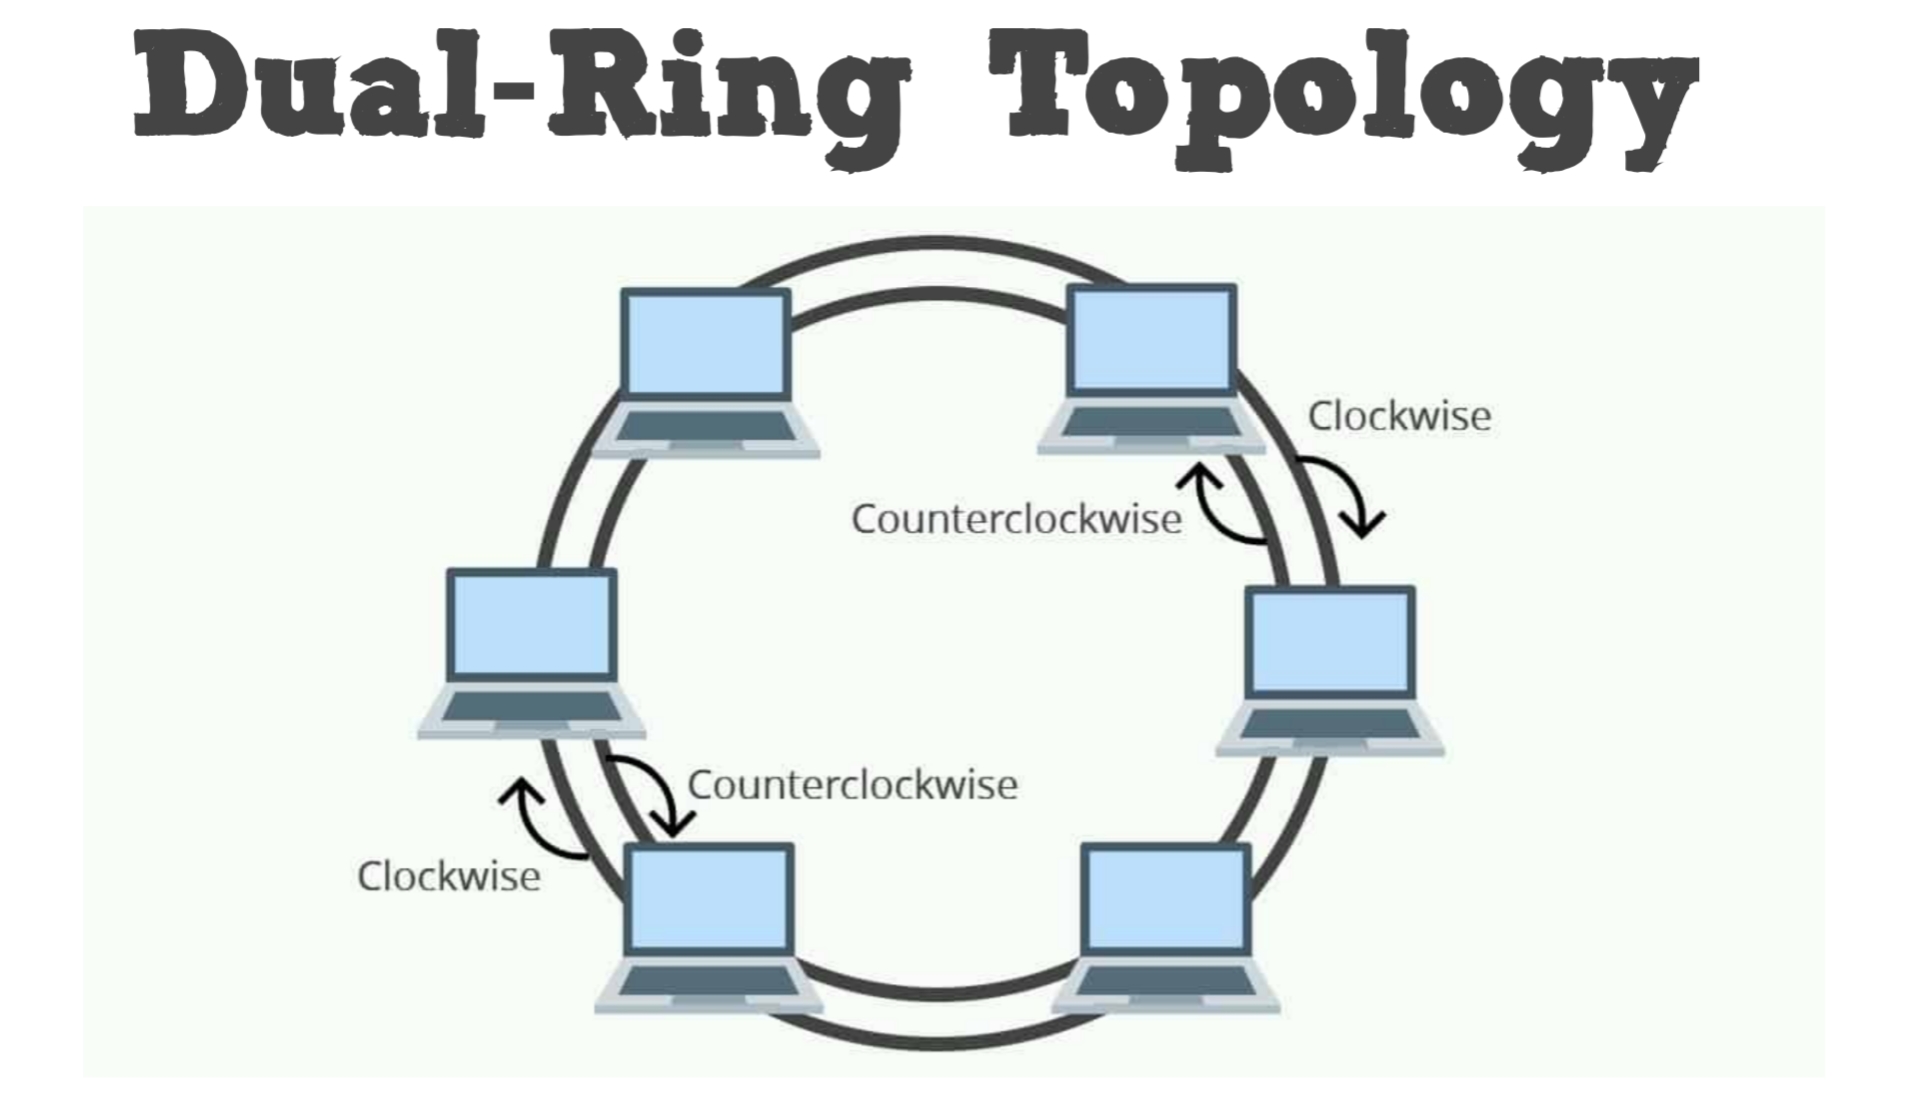 Кольцевое подключение. Кольцо (топология компьютерной сети). Двойное кольцо топология компьютерной сети. Кольцевая топология компьютерной сети. Топология локальных сетей кольцо.